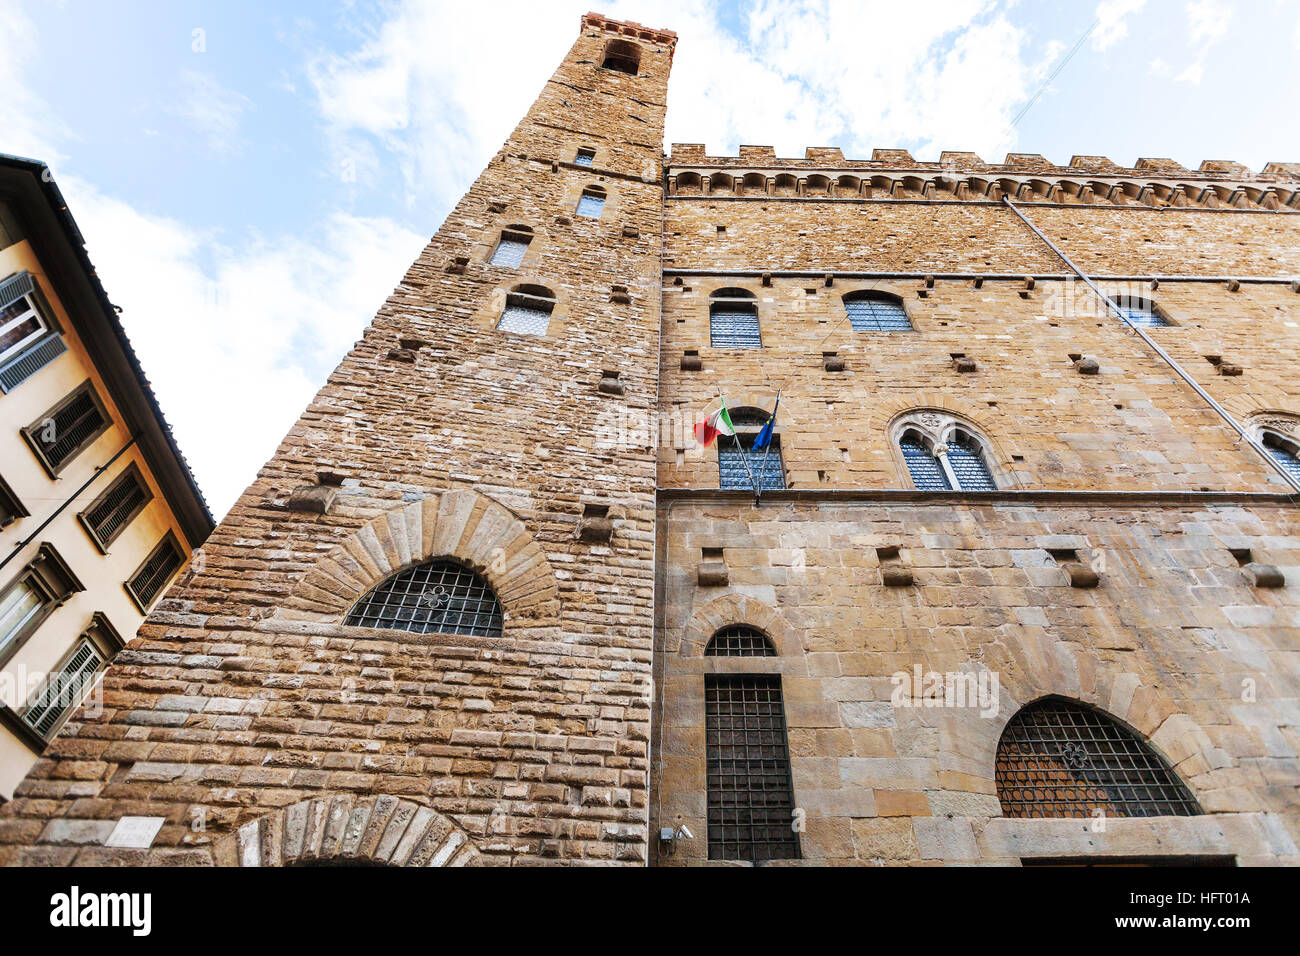 Reisen Sie nach Italien - Gebäude des Bargello Palast (Palazzo del Bargello, Palazzo del Popolo, der Menschen) in Florenz Zentrum Stockfoto